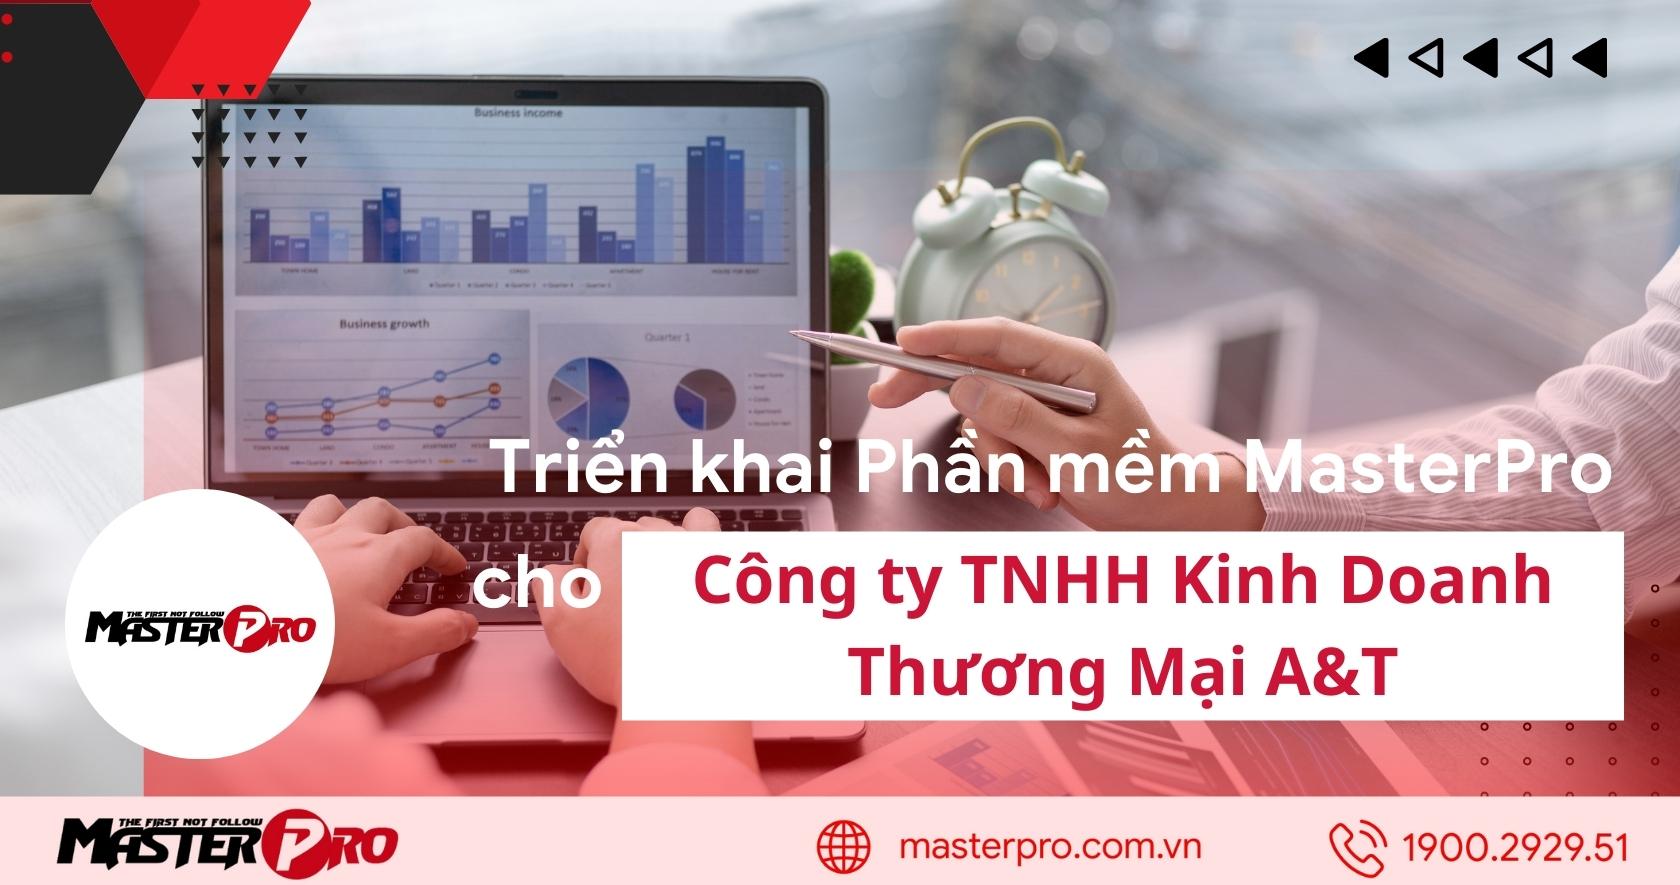 Triển khai phần mềm MasterPro cho Công ty TNHH Kinh Doanh Thương Mại A&T